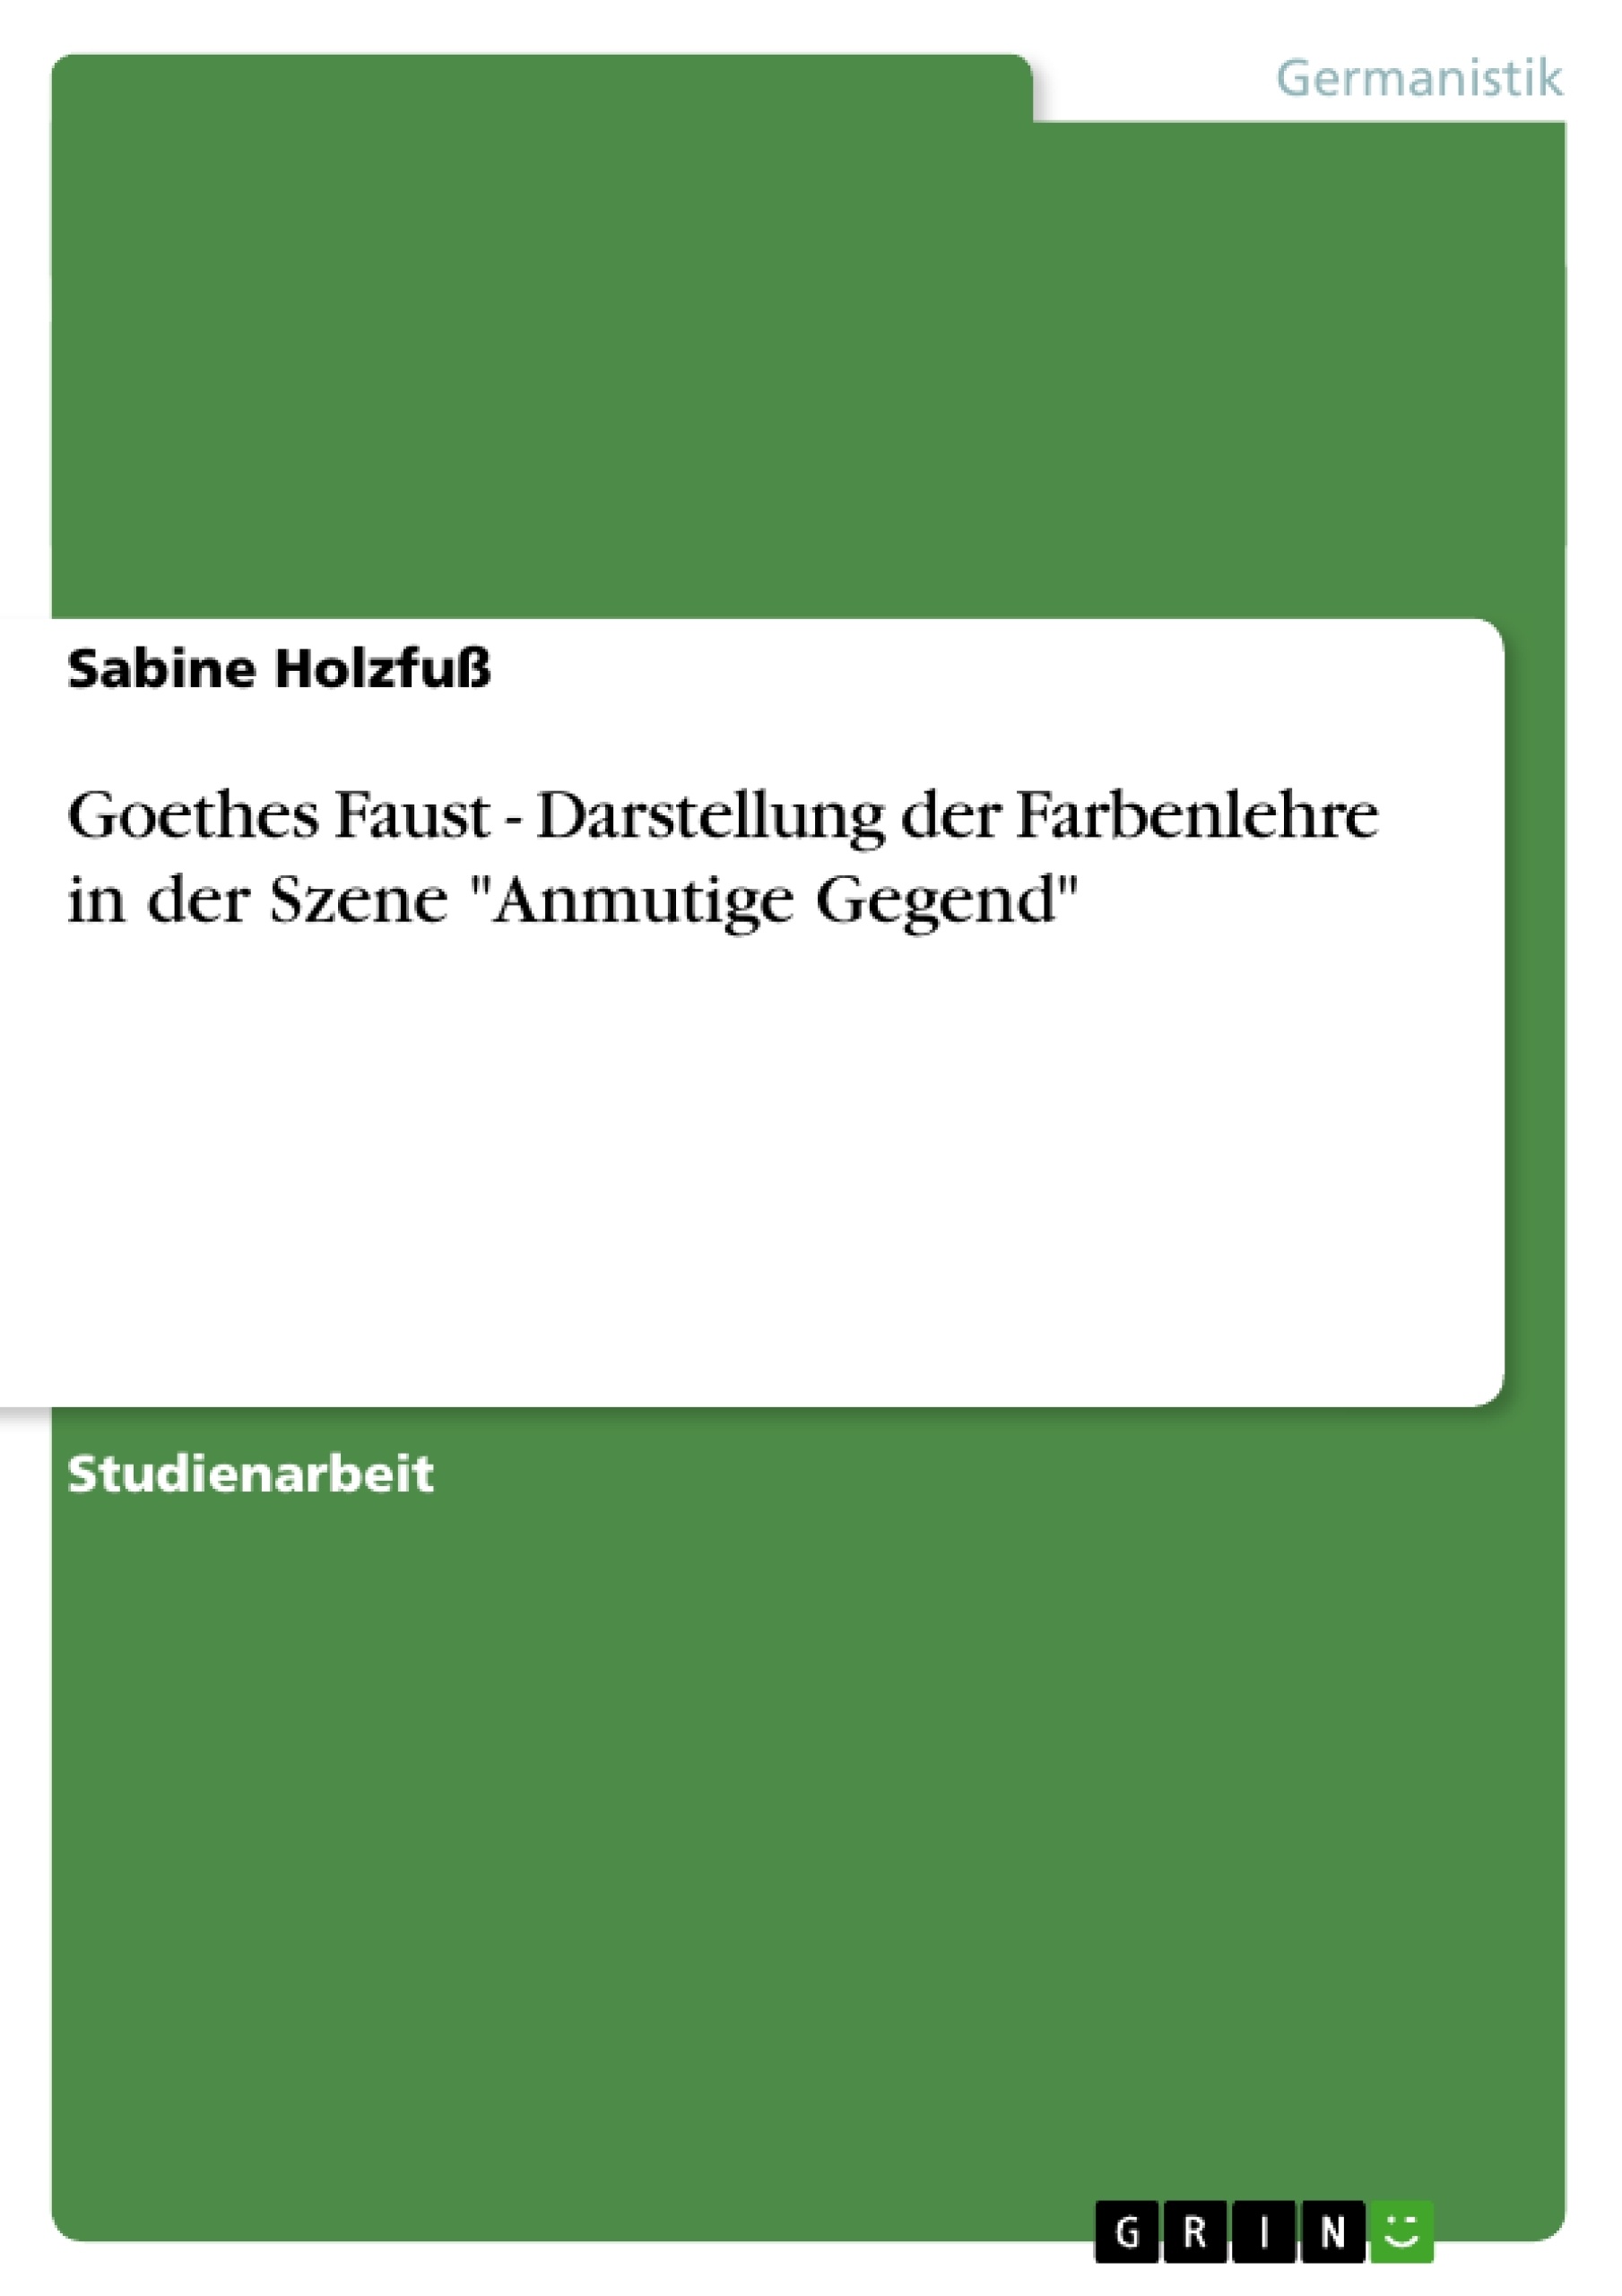 Título: Goethes Faust - Darstellung der Farbenlehre in der Szene "Anmutige Gegend"